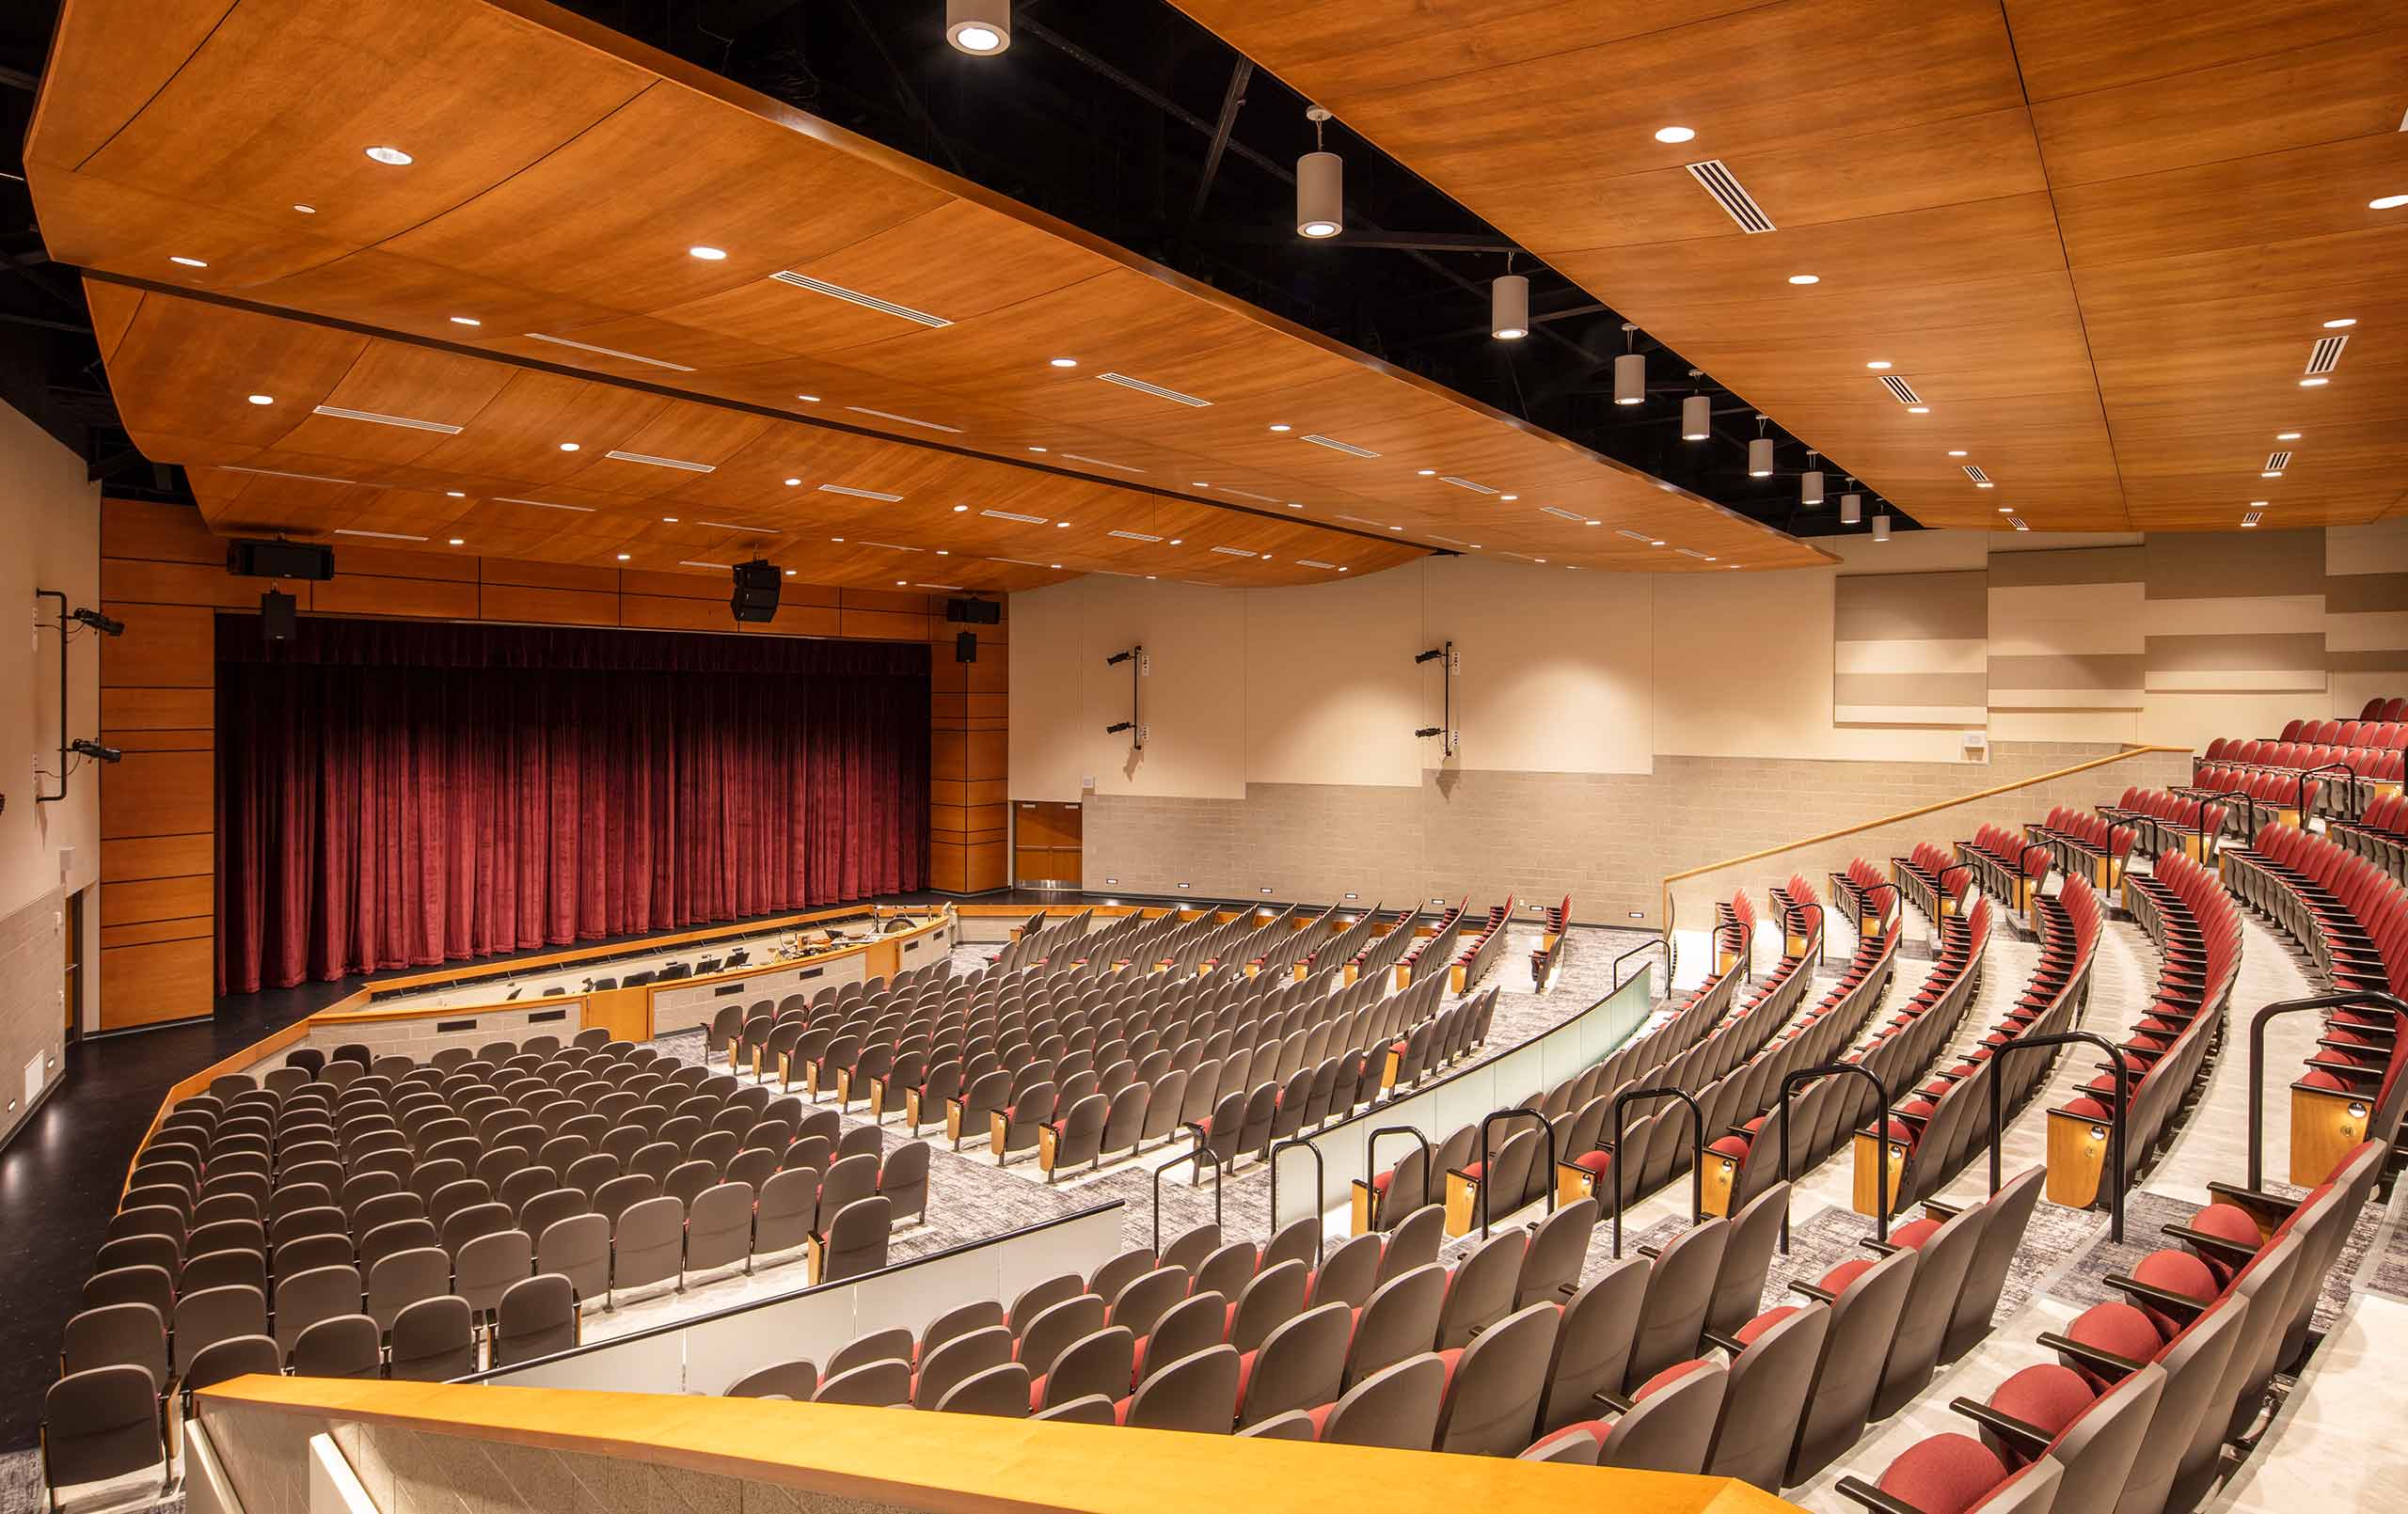 Bartlett Performing Arts Center auditorium. 